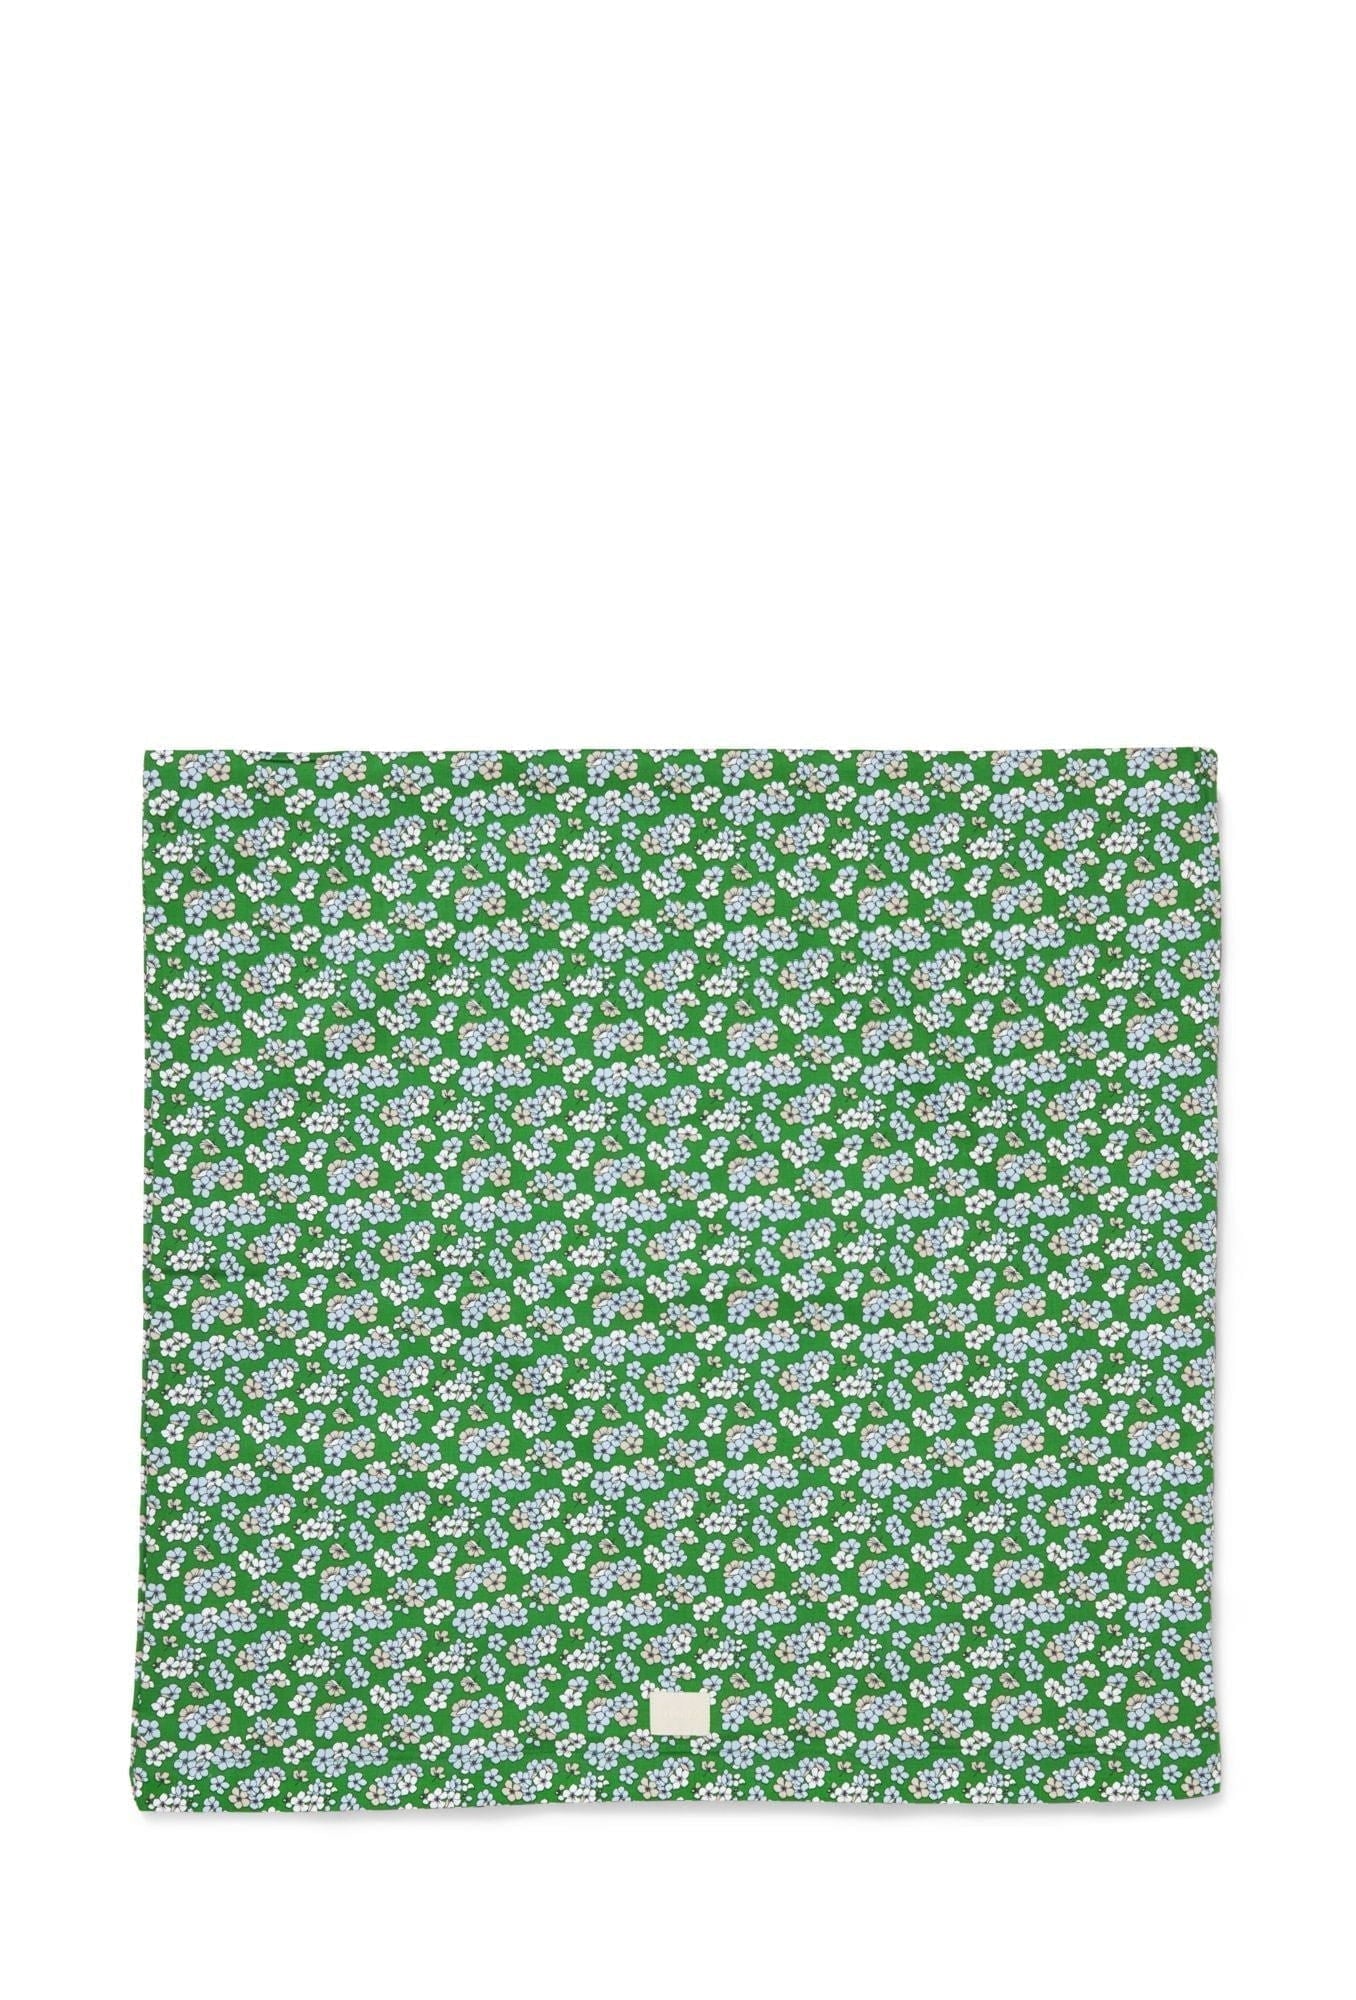 Juna Aangenaam kussensloop 63x60 cm, groen